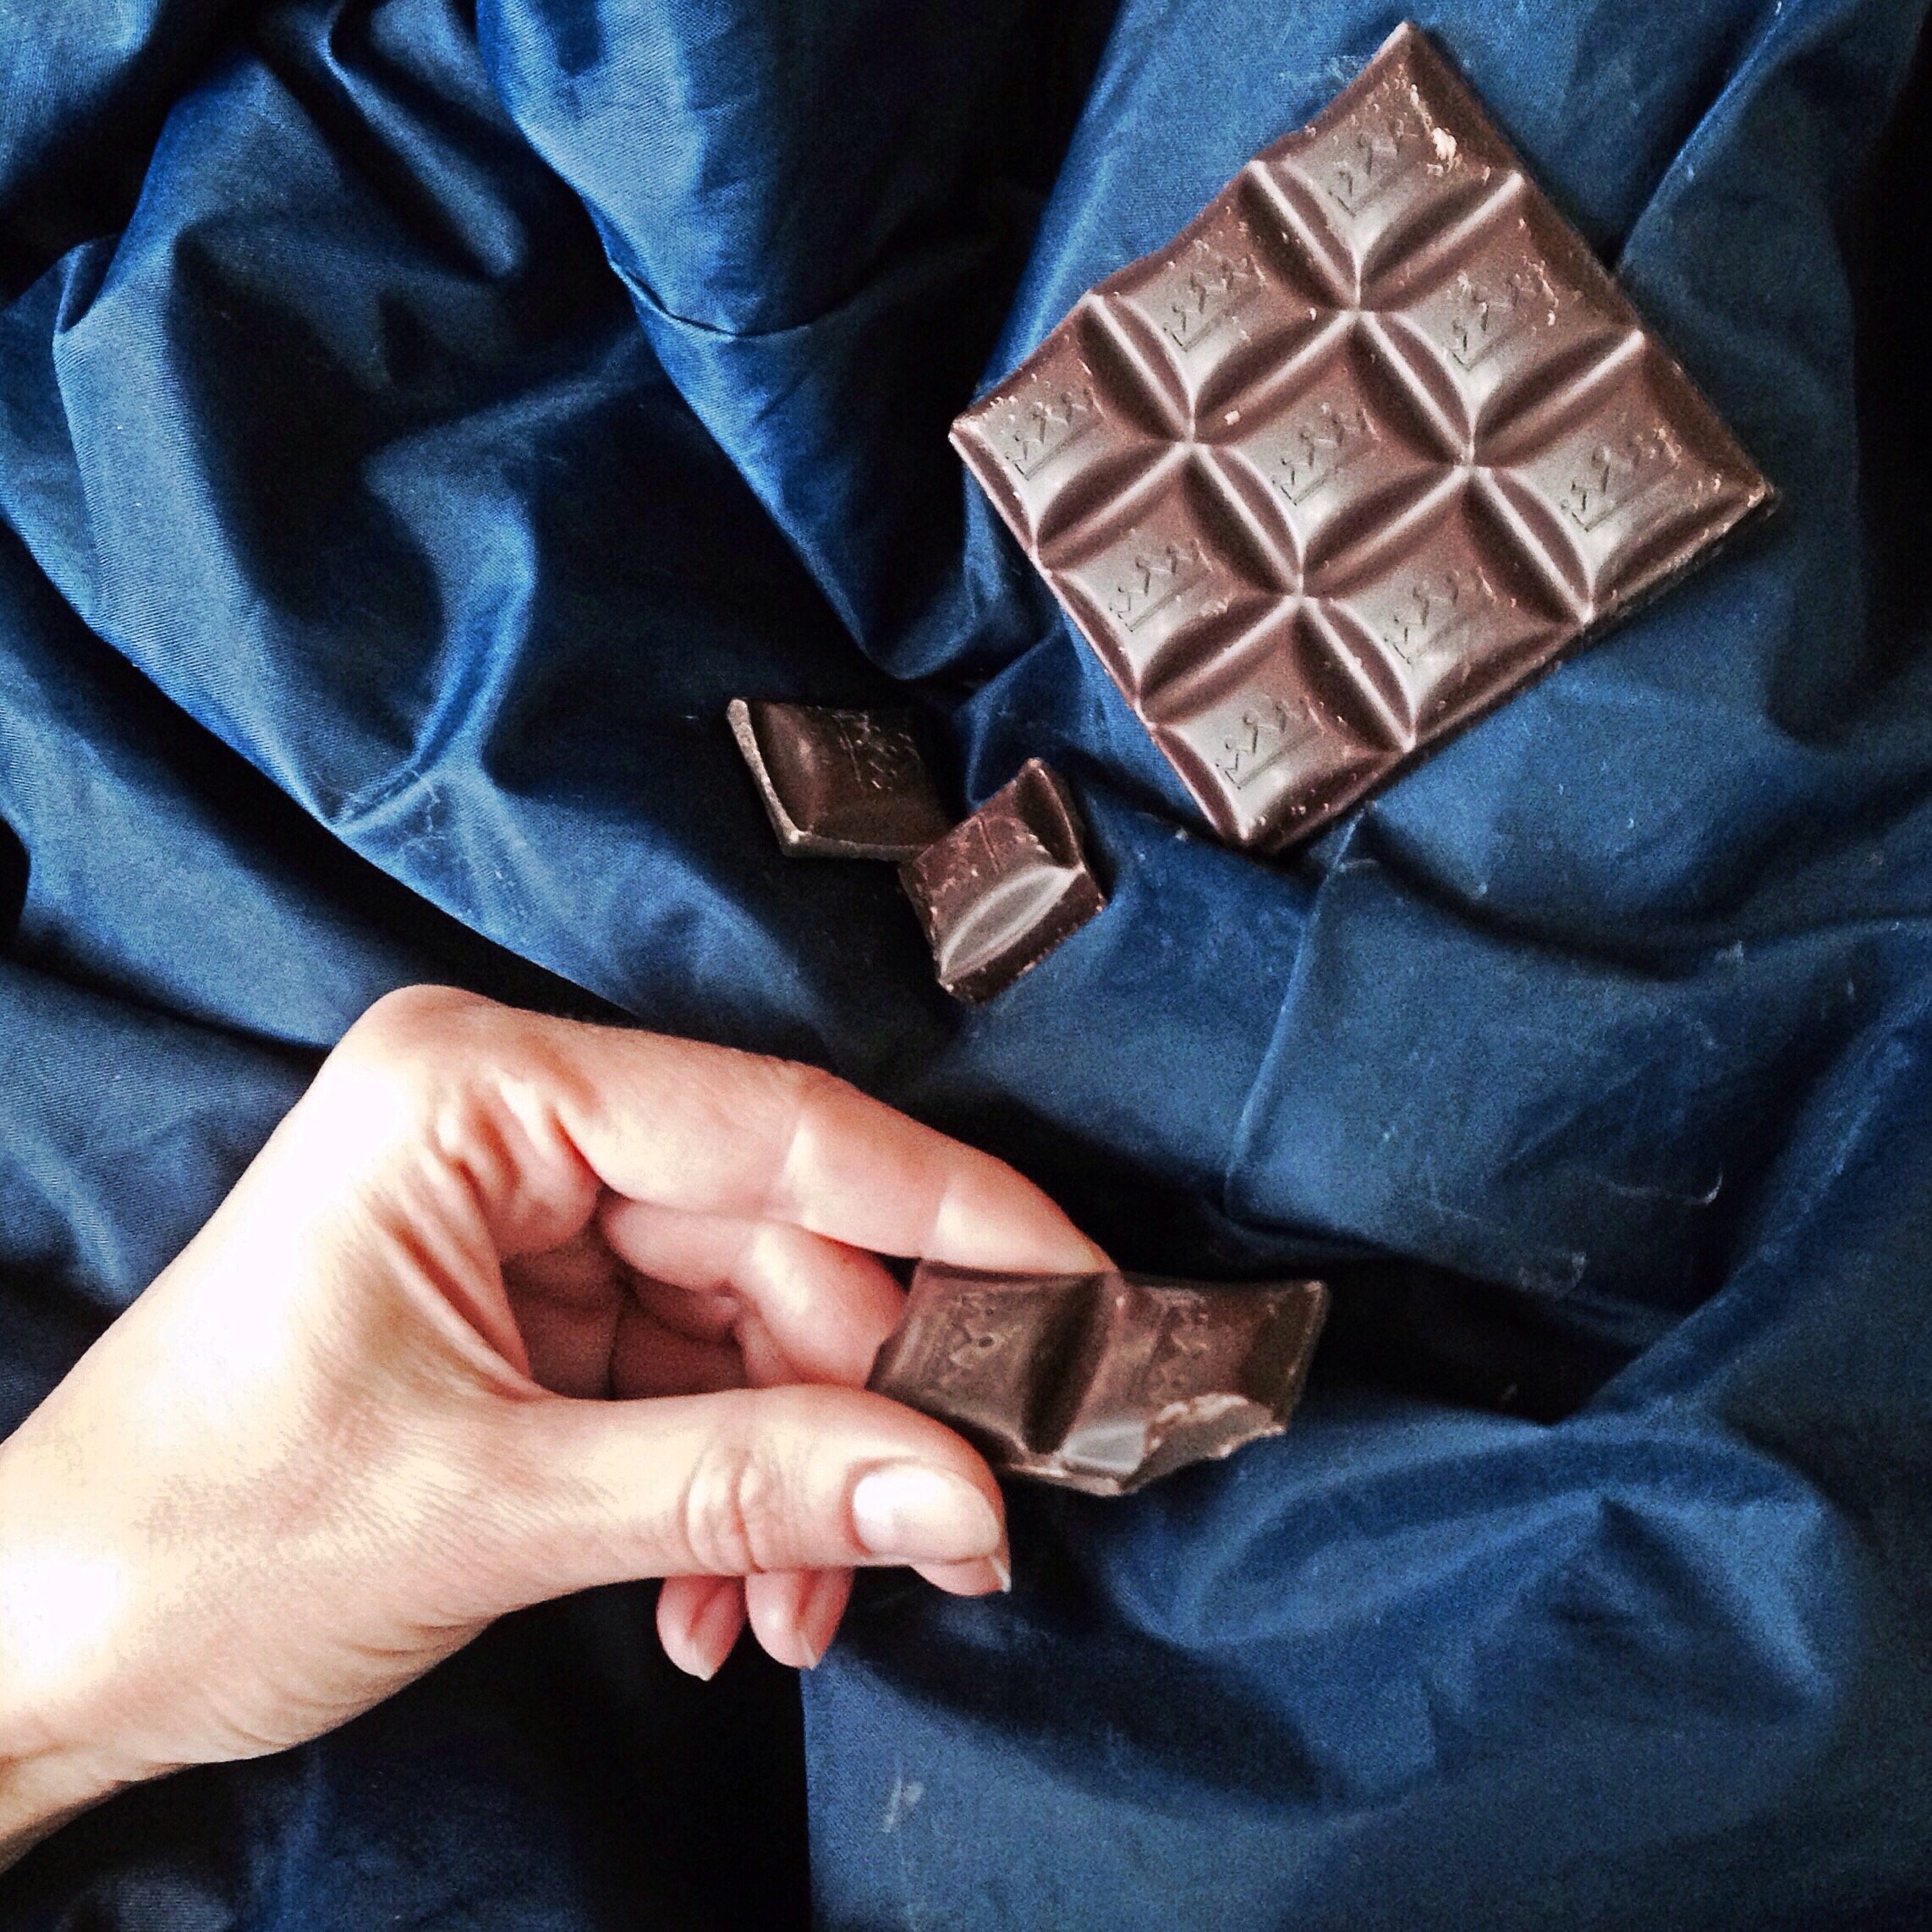 Pessoa segurando pedaço de chocolate e ao lado de uma barra de chocolate